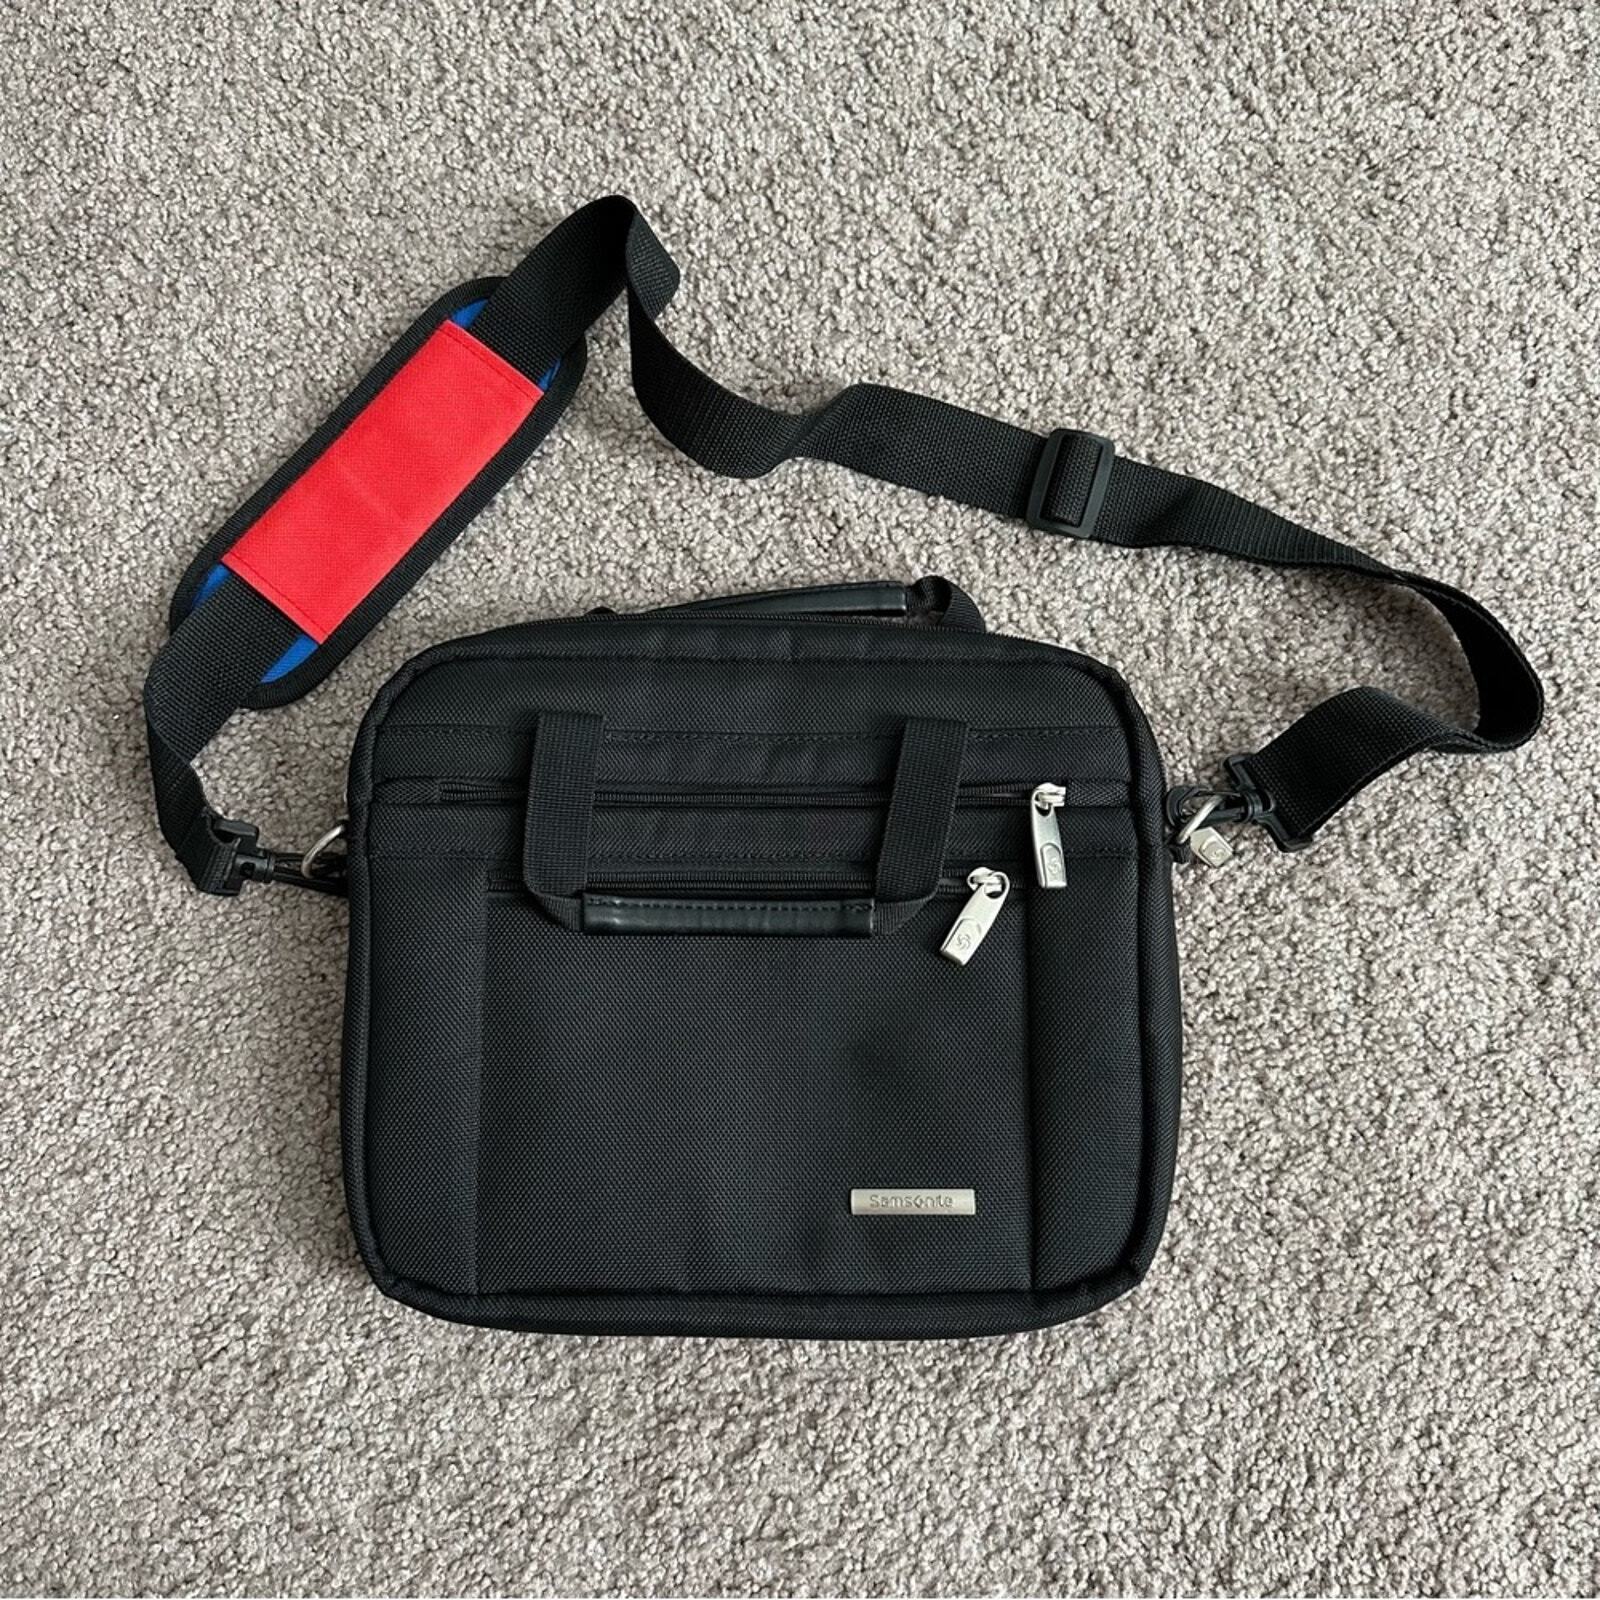 Samsonite Tablet/iPad Laptop Carry Case Shoulder Bag Briefcase Shoulder Strap